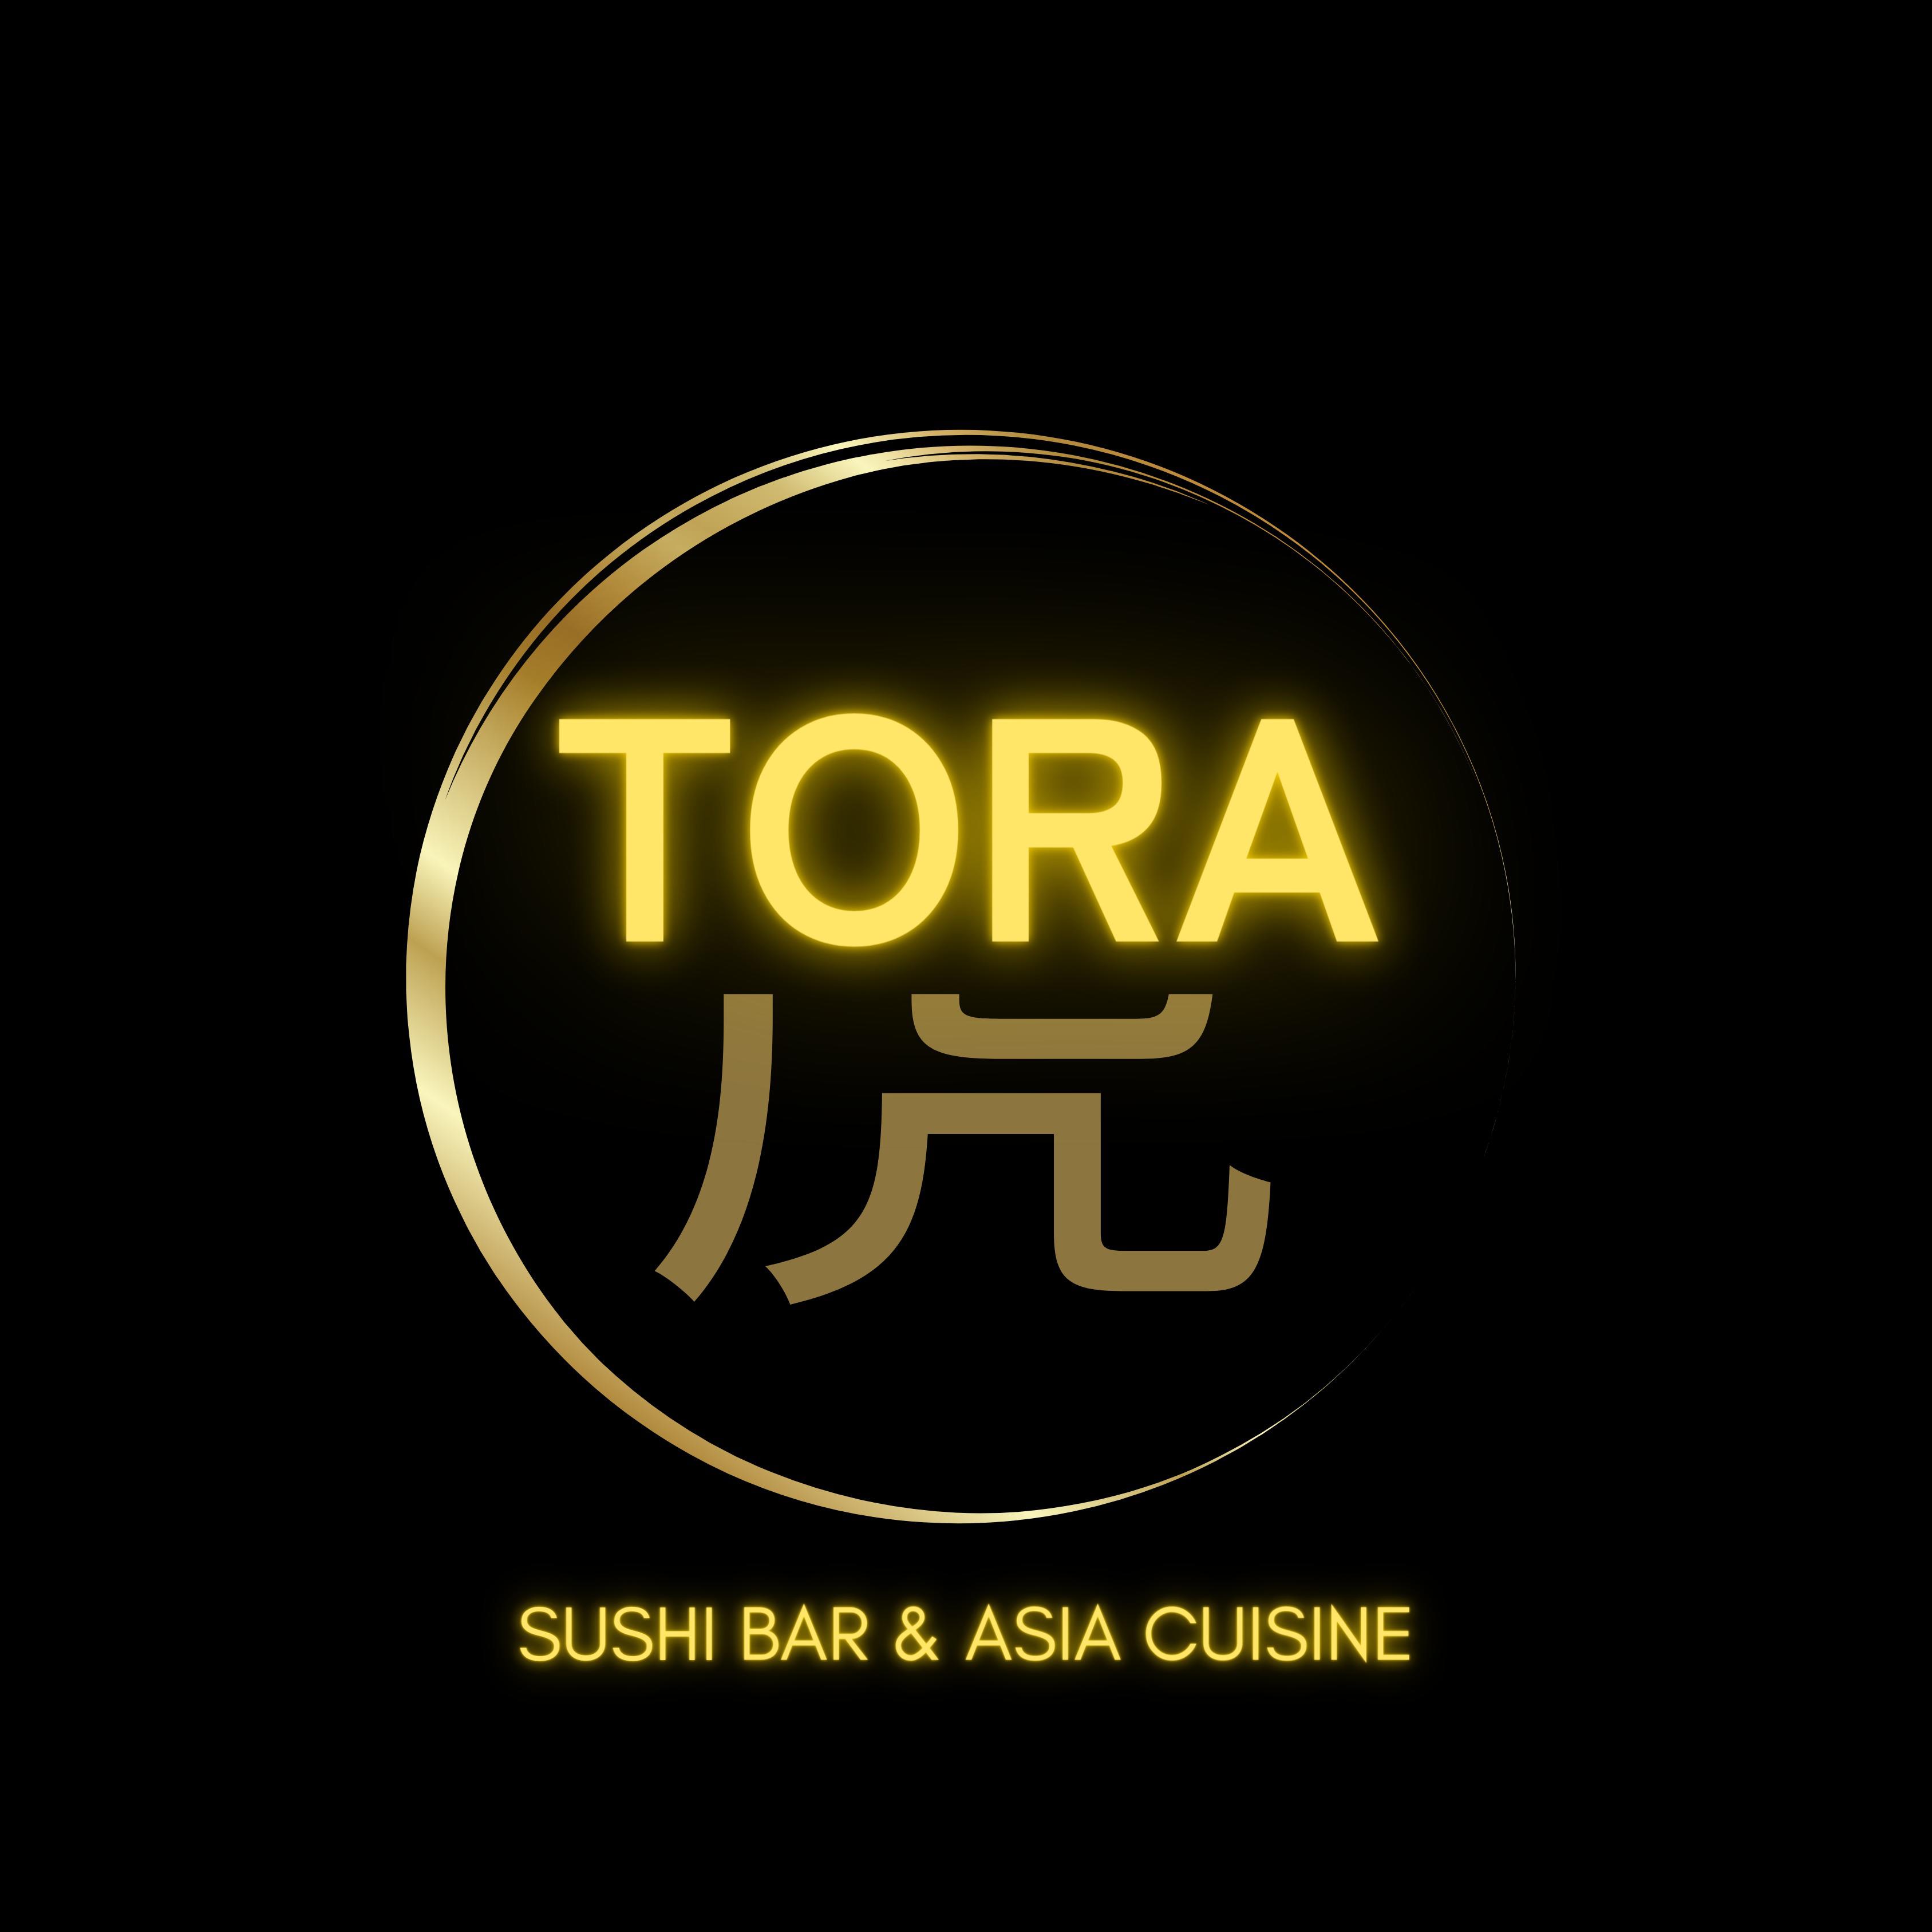 Tora - Sushi Bar & Asia Cuisine in Gießen - Logo